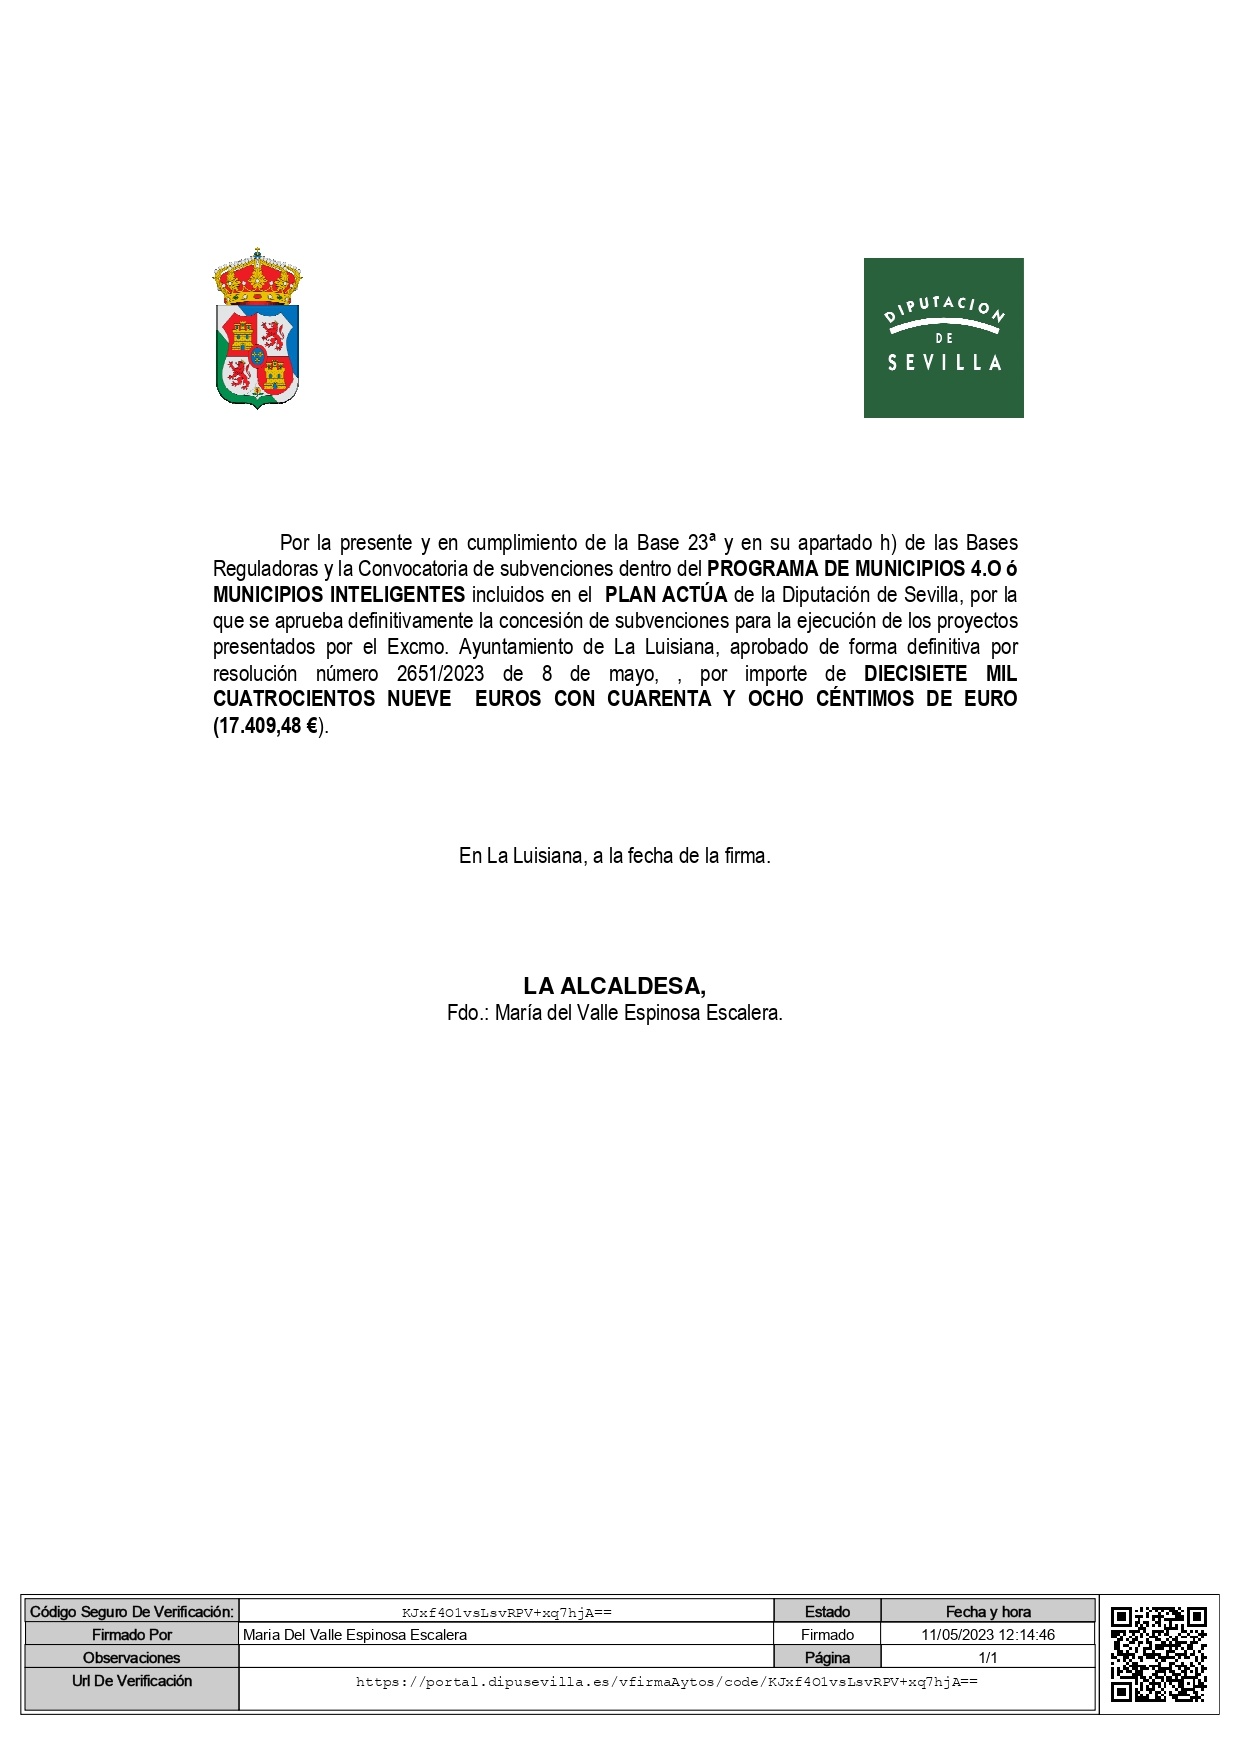 Anuncio Publicidad Subvencion MUNICIPIOS INTELIGENTES firmado_page-0001